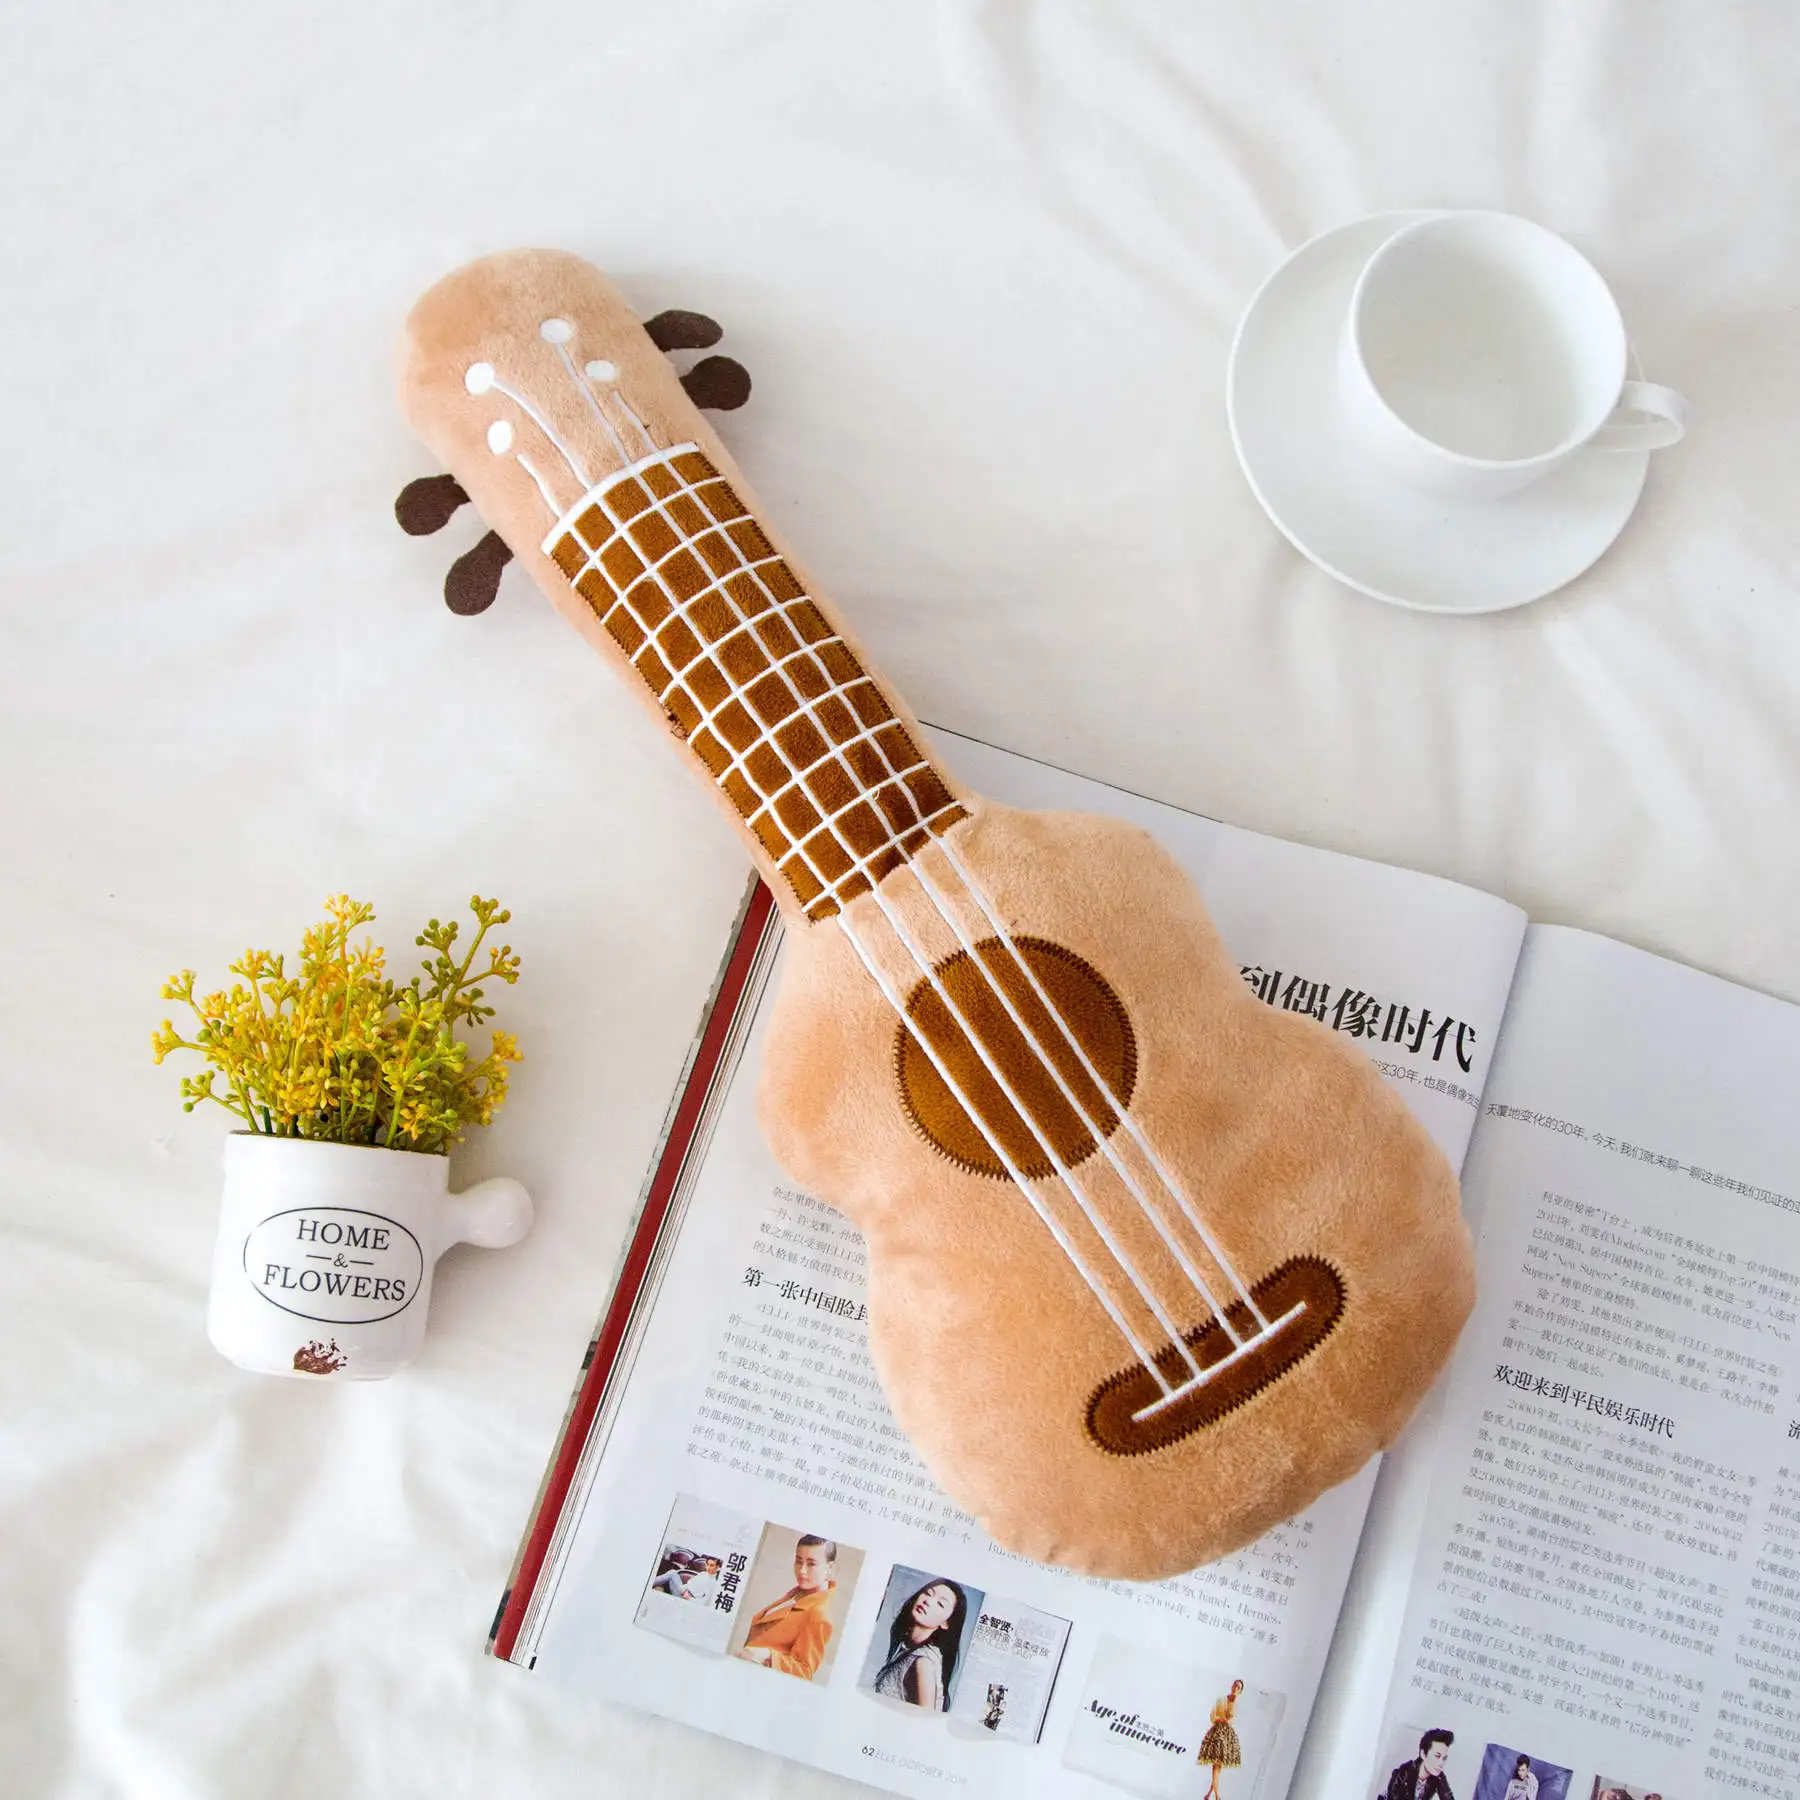 Моделирование 3D гитара плюшевая игрушка мягкая подушка модное милое украшение для дома текстиль постельные принадлежности подушки девушка подарок на день рождения Рождество